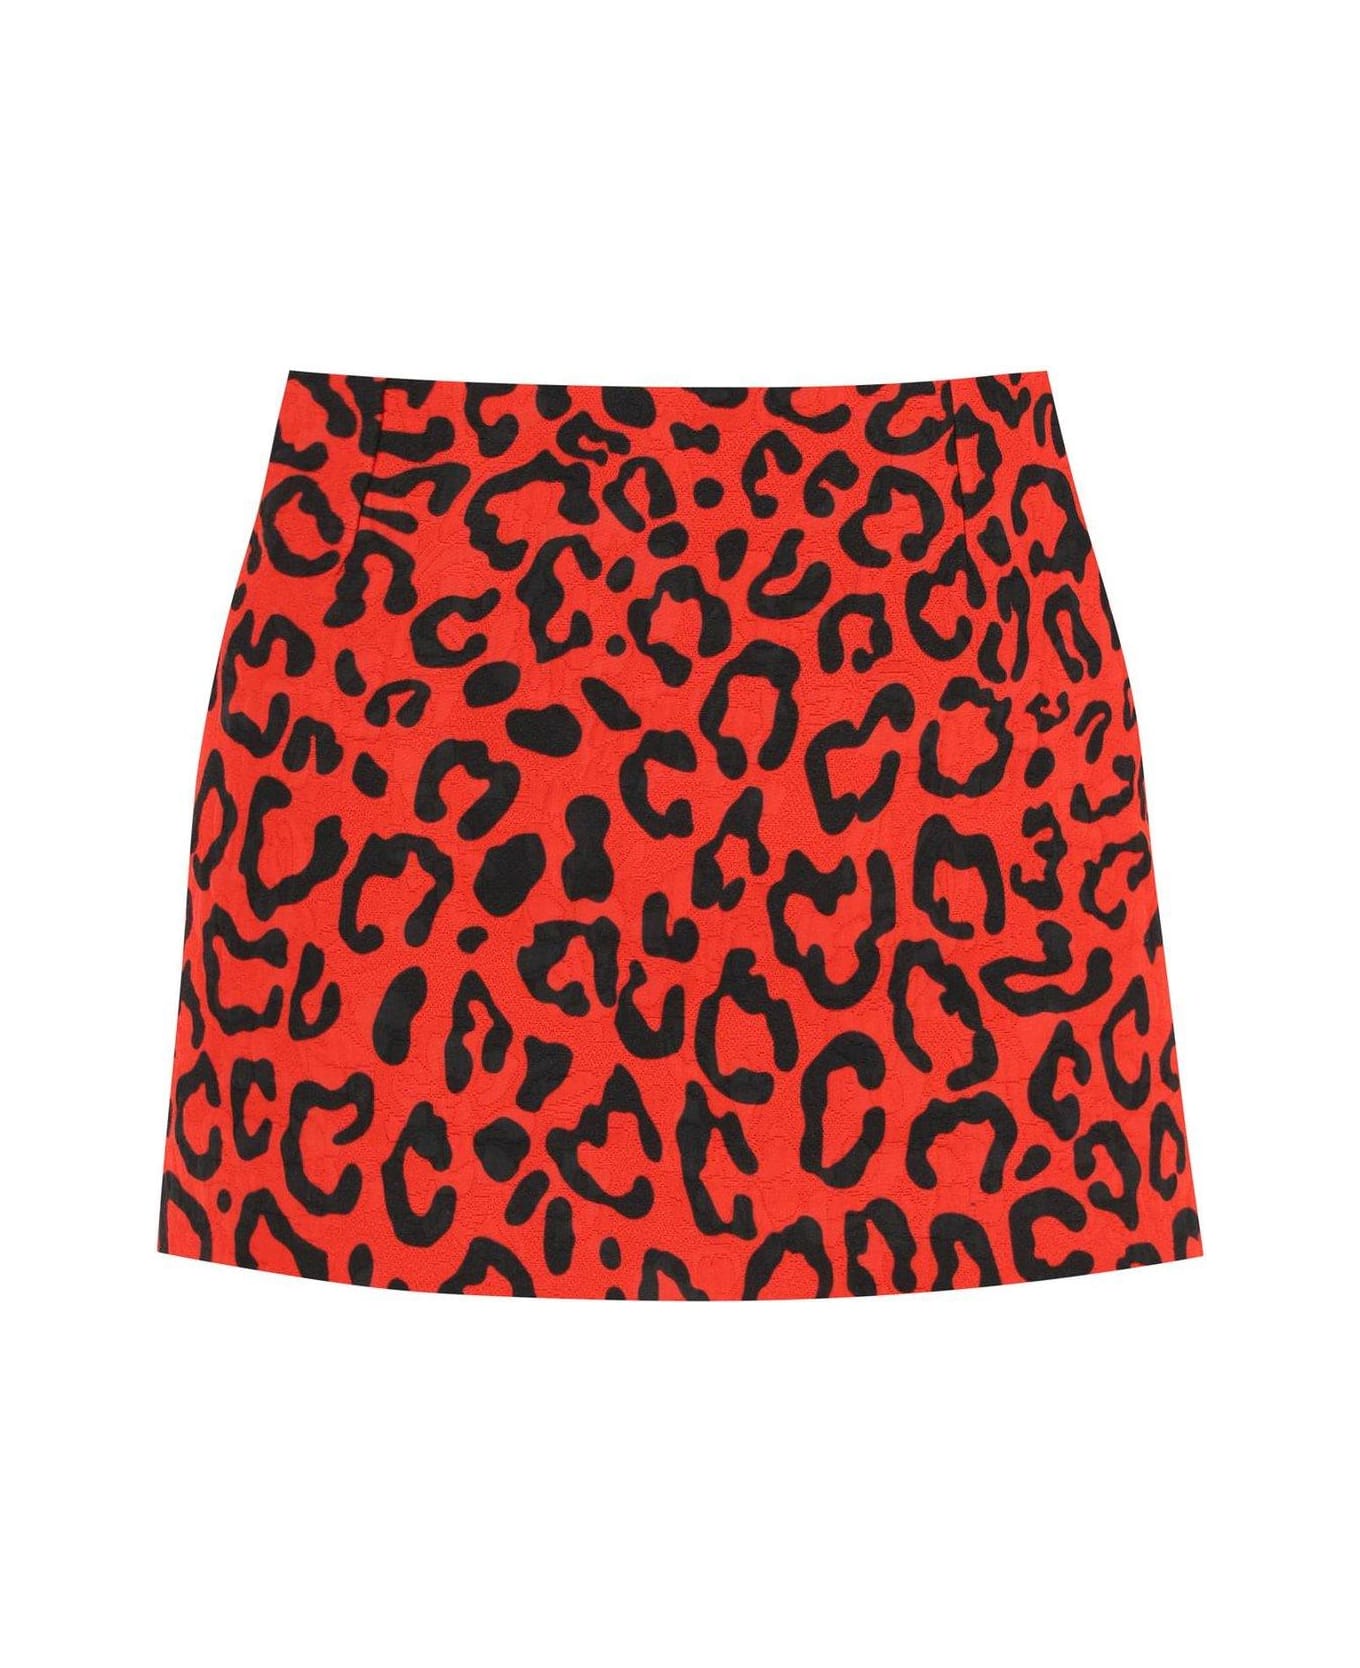 Dolce & Gabbana Leopard Printed High Waist Mini Skirt - Шарф dolce&gabbana оригинал